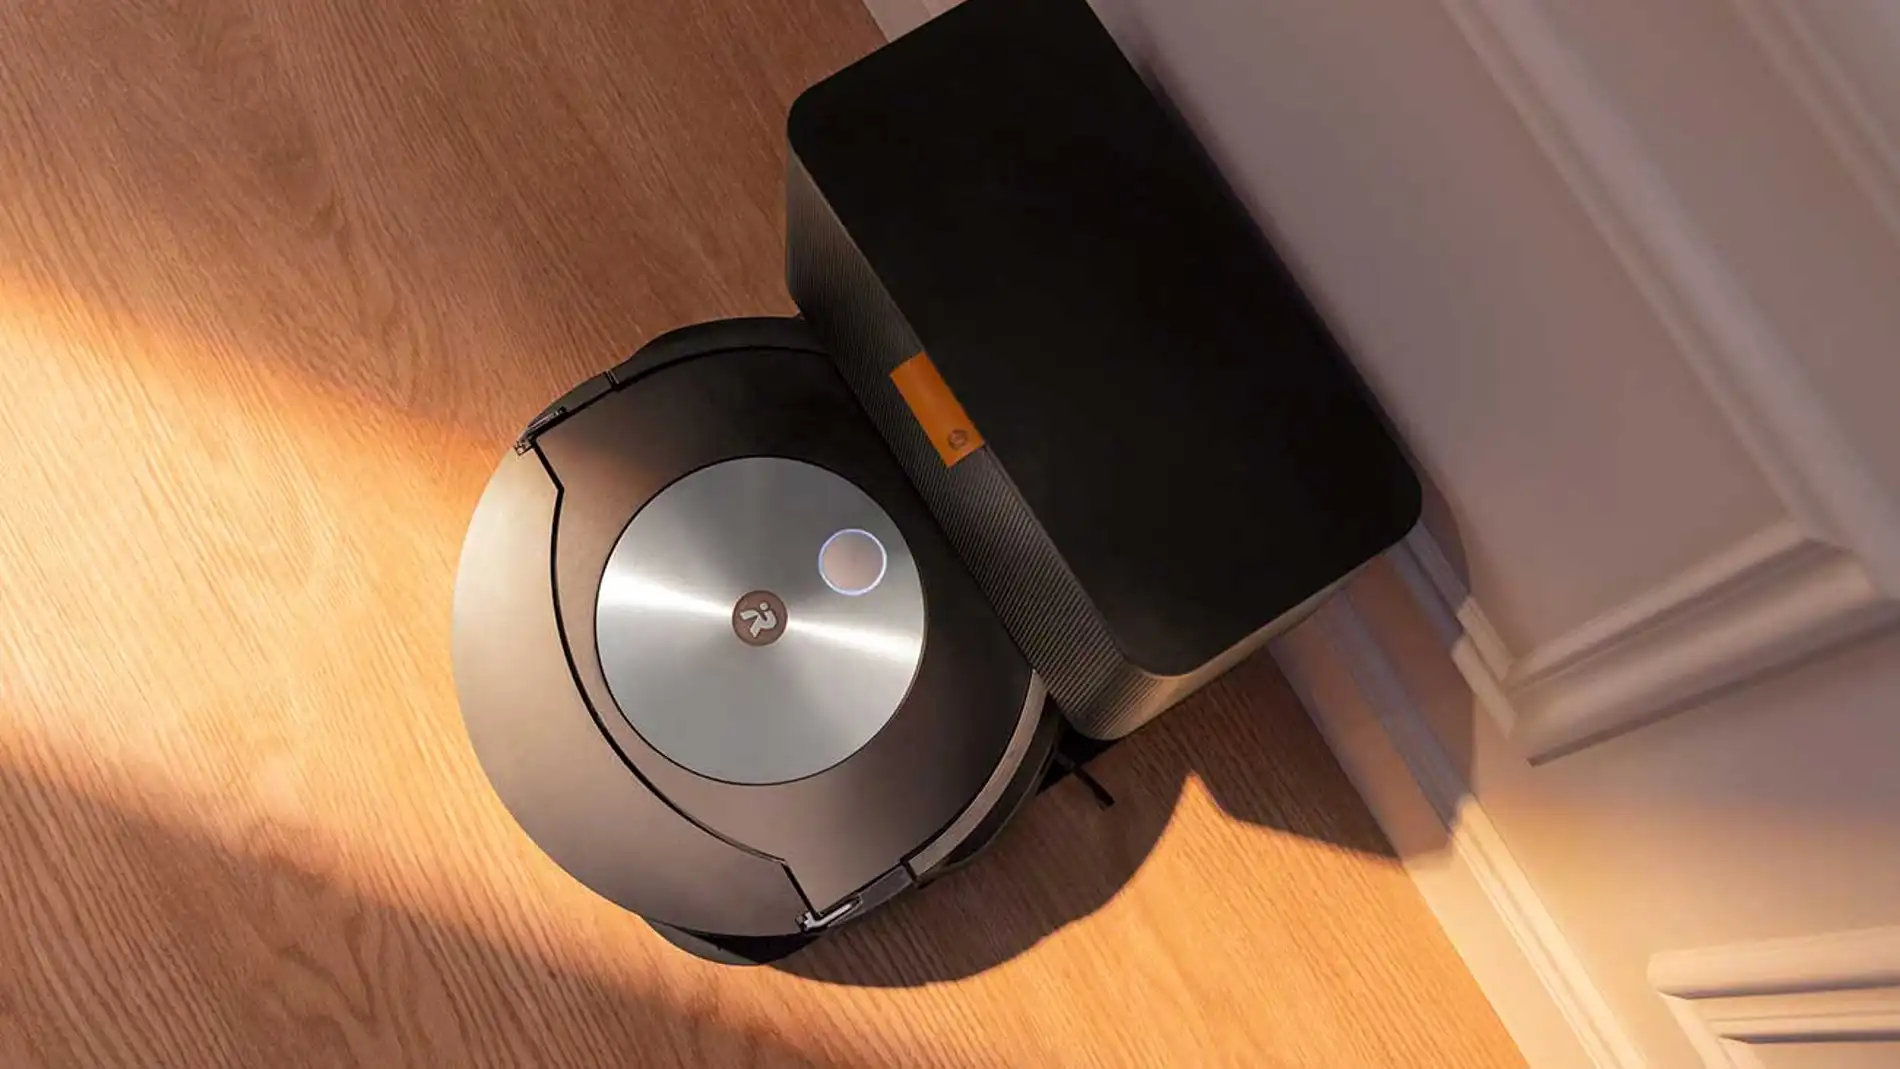 El robot aspiradora Roomba que siempre has querido tiene súper rebaja:  ahora o nunca